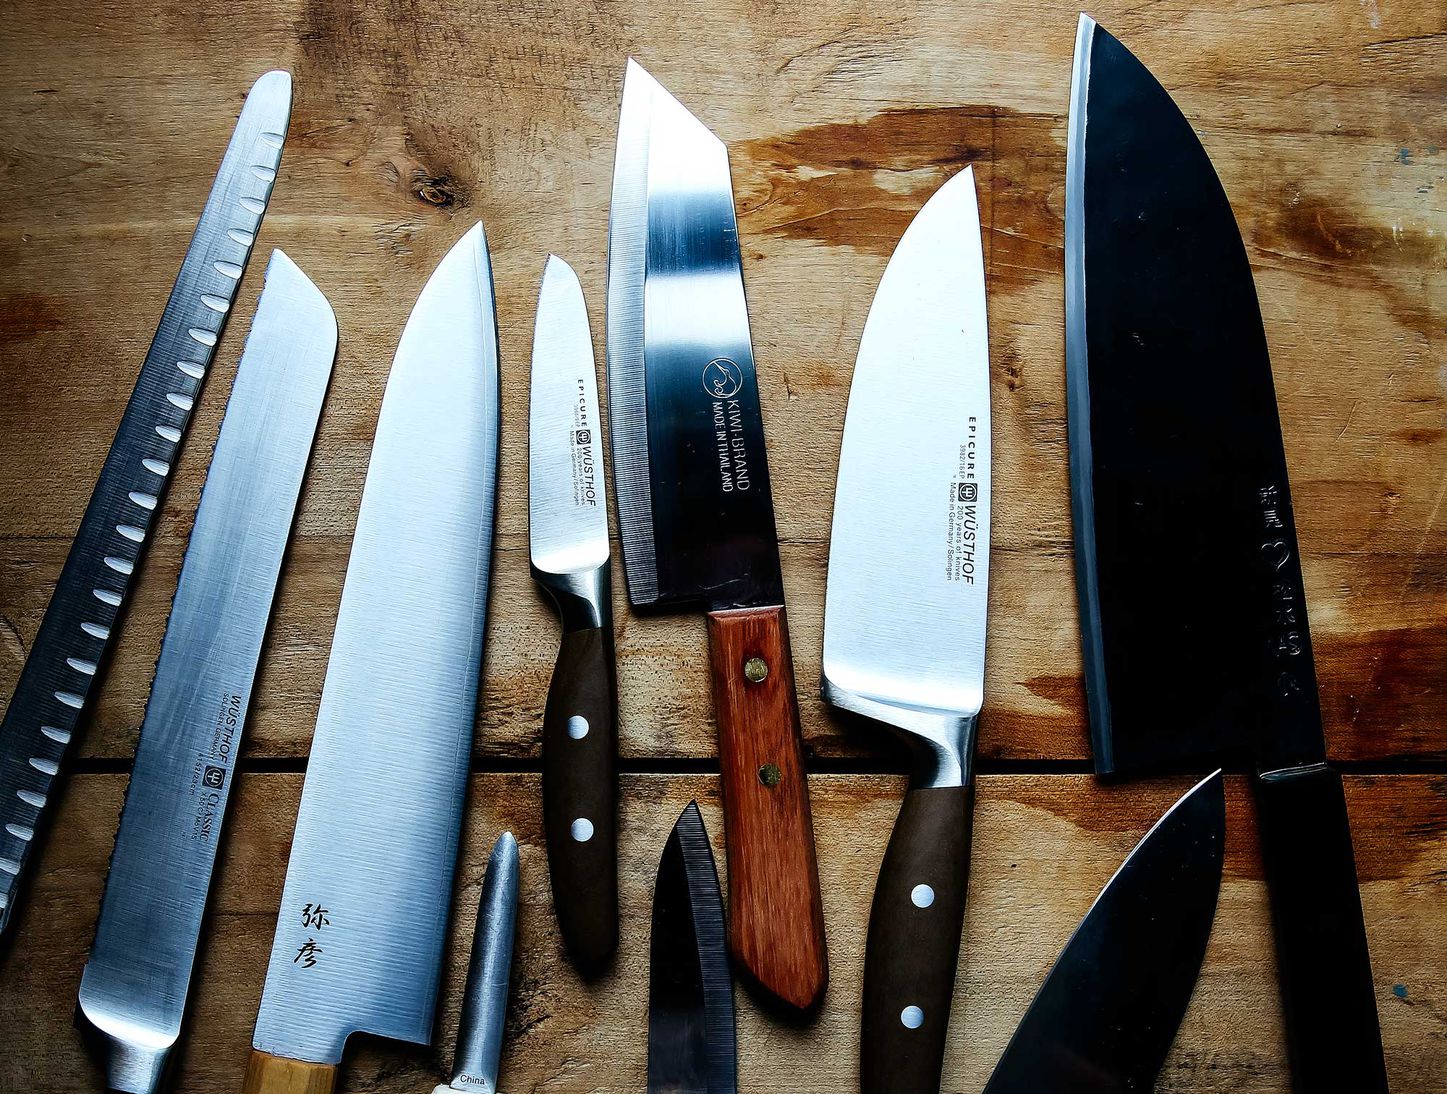 https://sharpestknife.files.wordpress.com/2020/11/knives.jpg